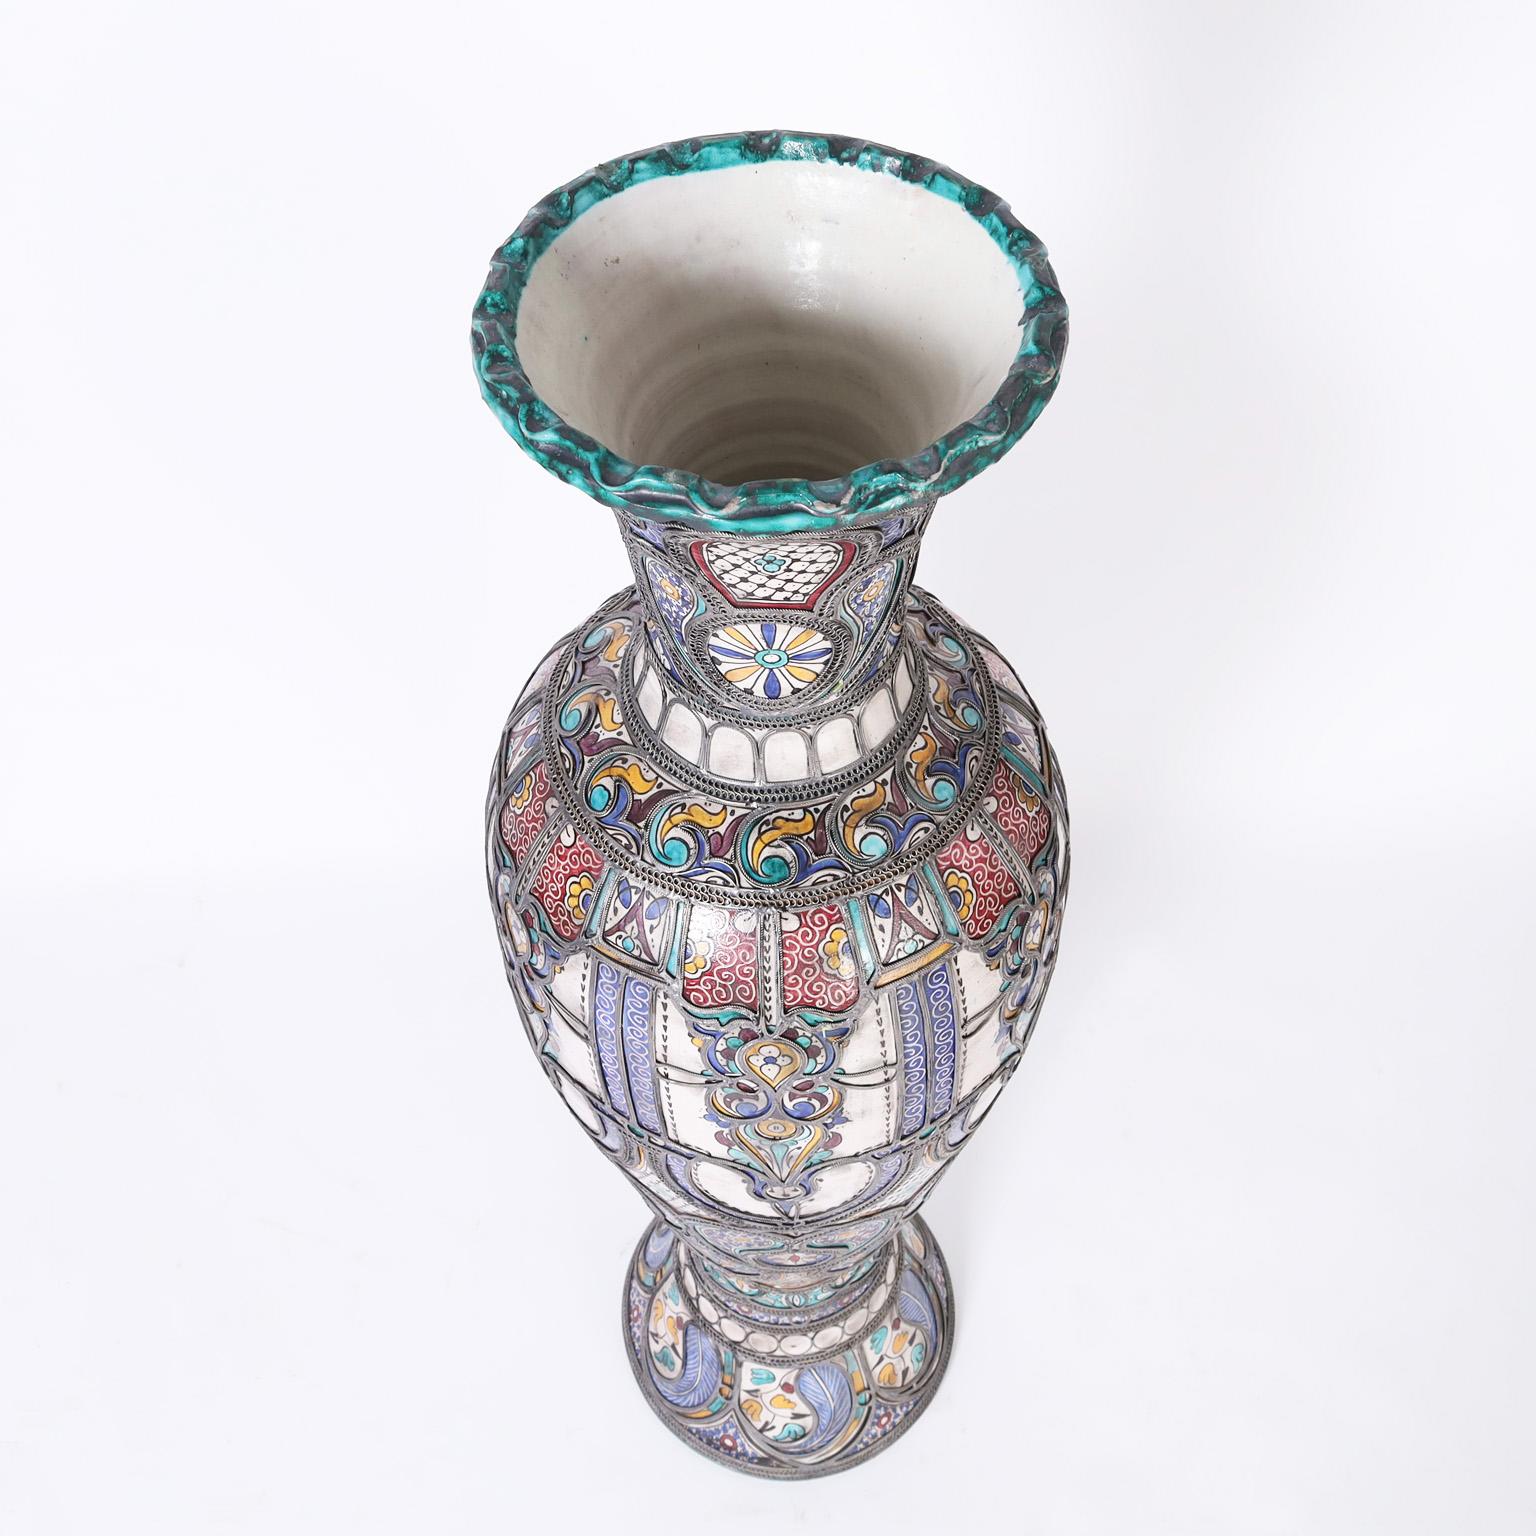 Grande urne en terre cuite vernissée, décorée dans des couleurs méditerranéennes traditionnelles, avec des superpositions de métaux ressemblant à des bijoux, ce qui augmente l'effet de surprise. Le meilleur du genre.